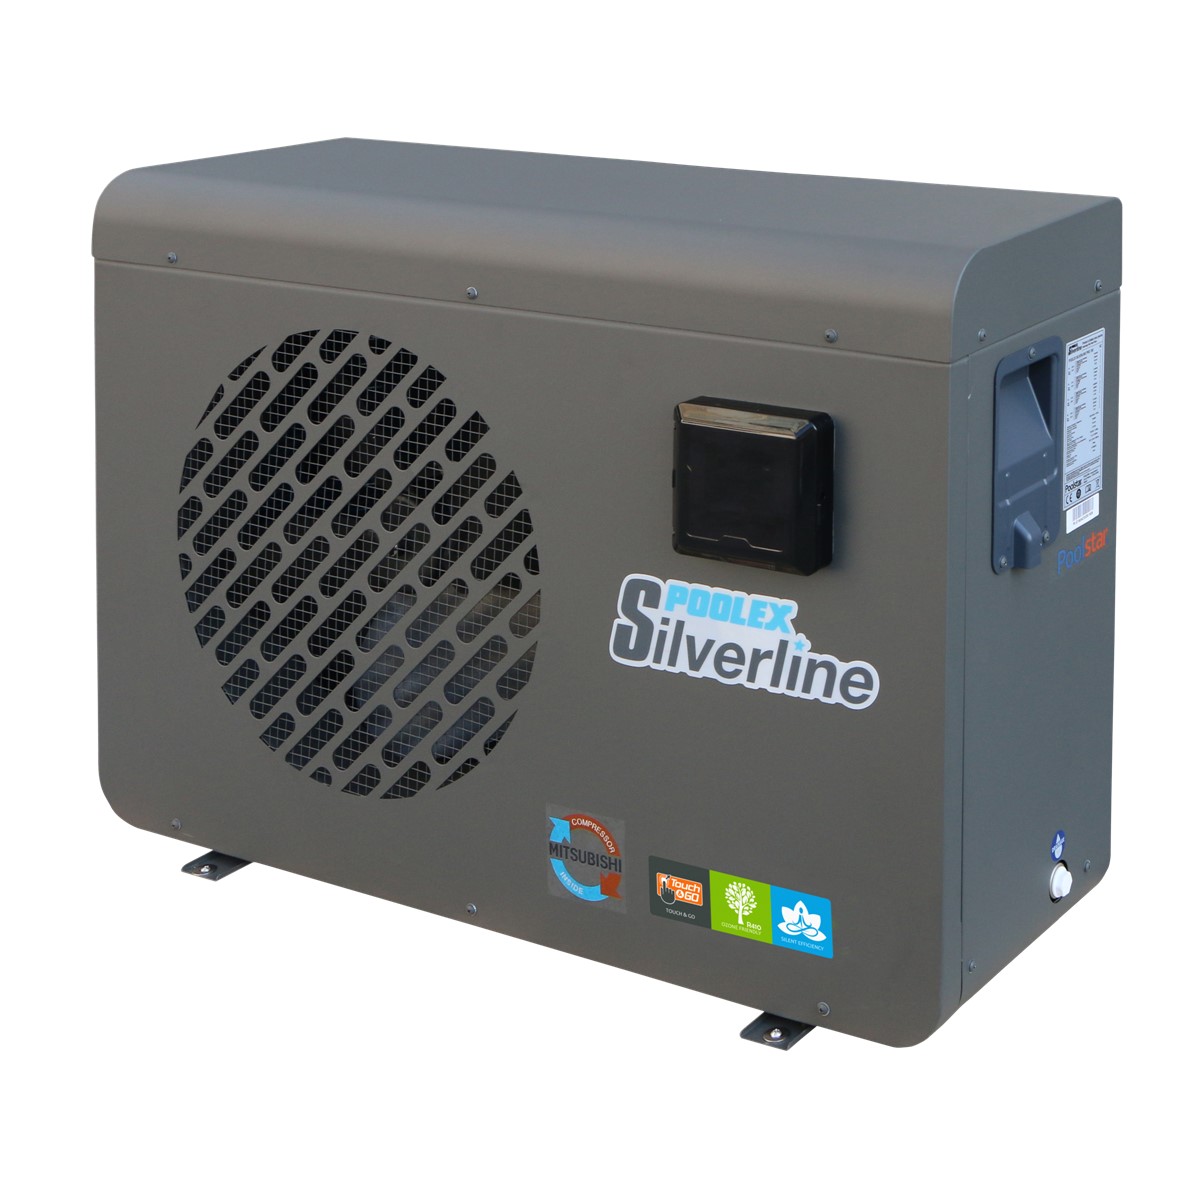 Poolex Silverline R32 heat pump